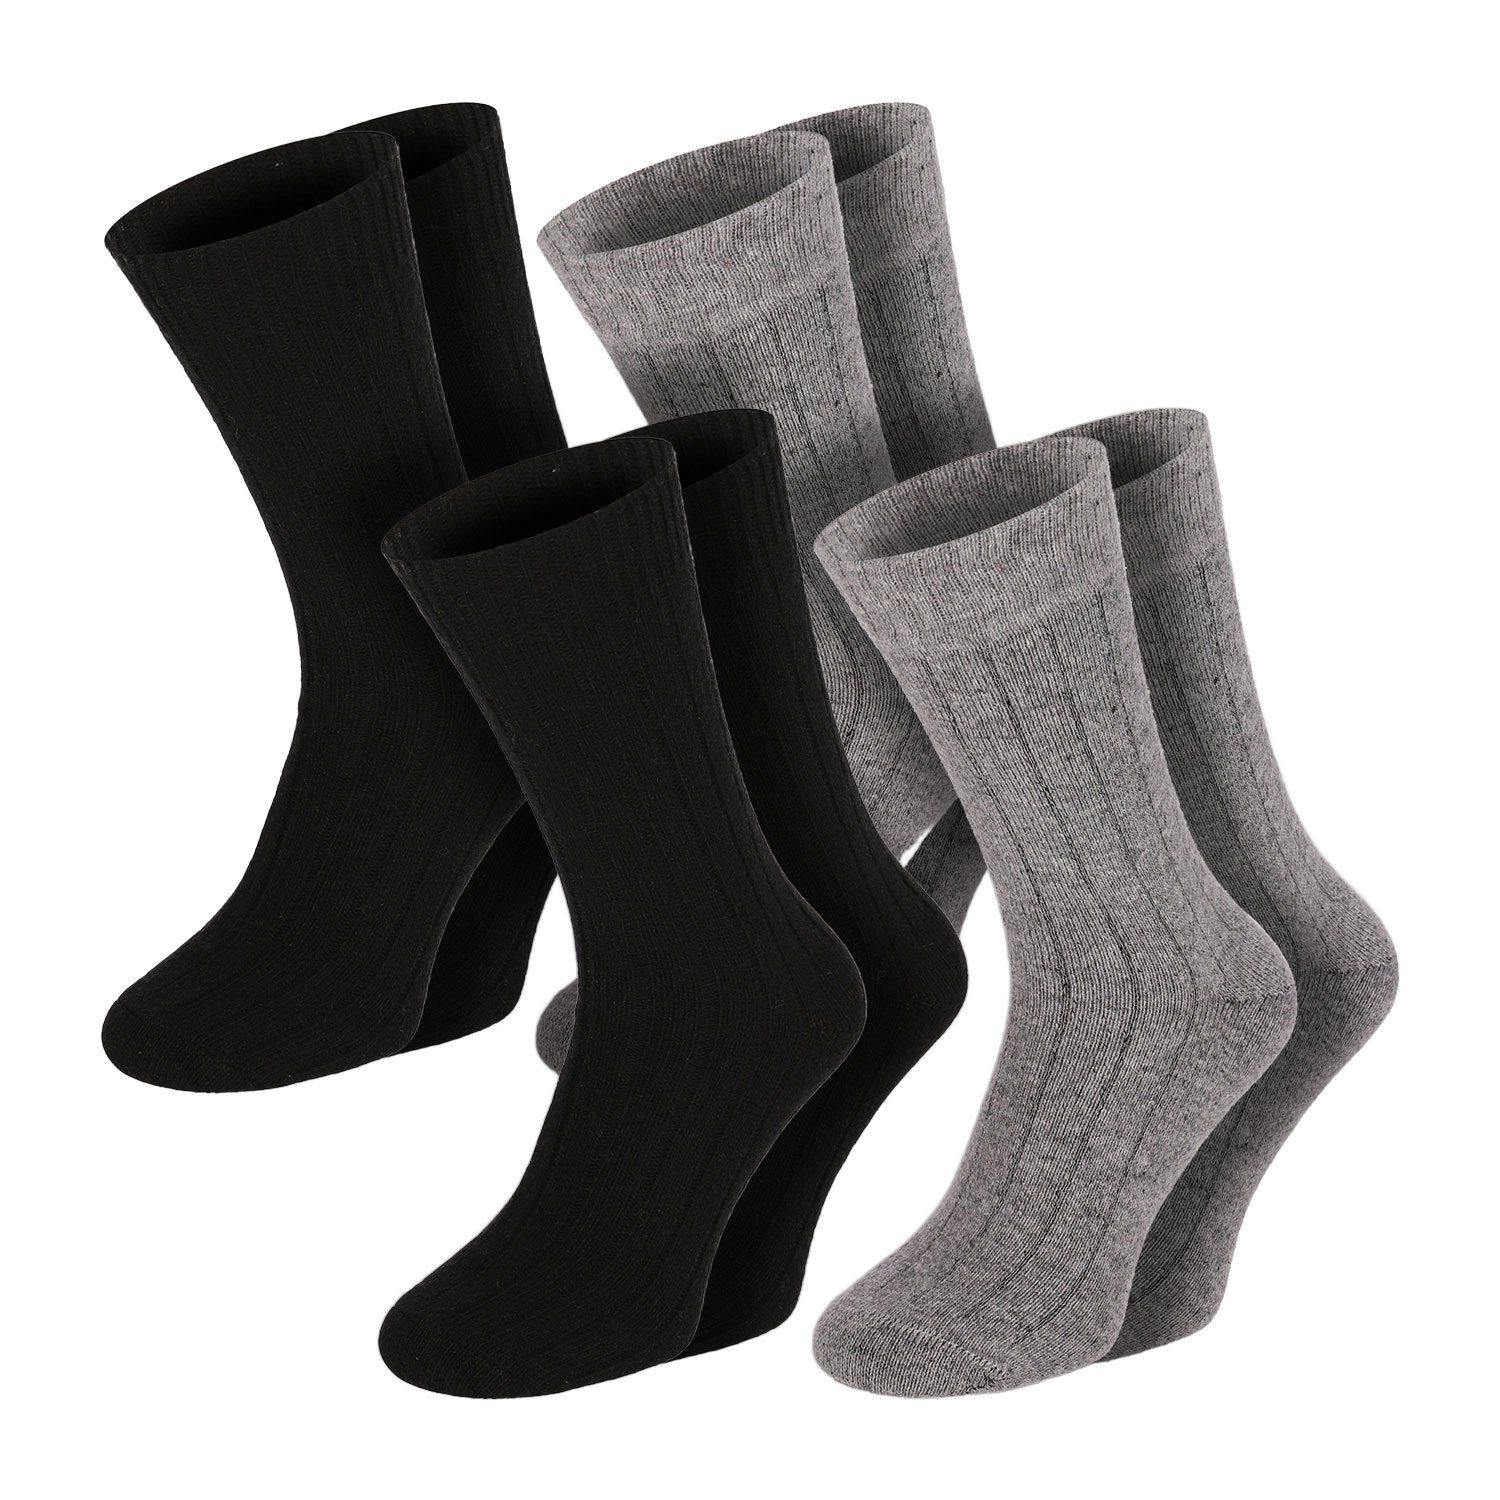 Chili Lifestyle Strümpfe Socken Winter Merino Wolle Damen Herren Extra Warm Super Soft 4 Paar | Strümpfe